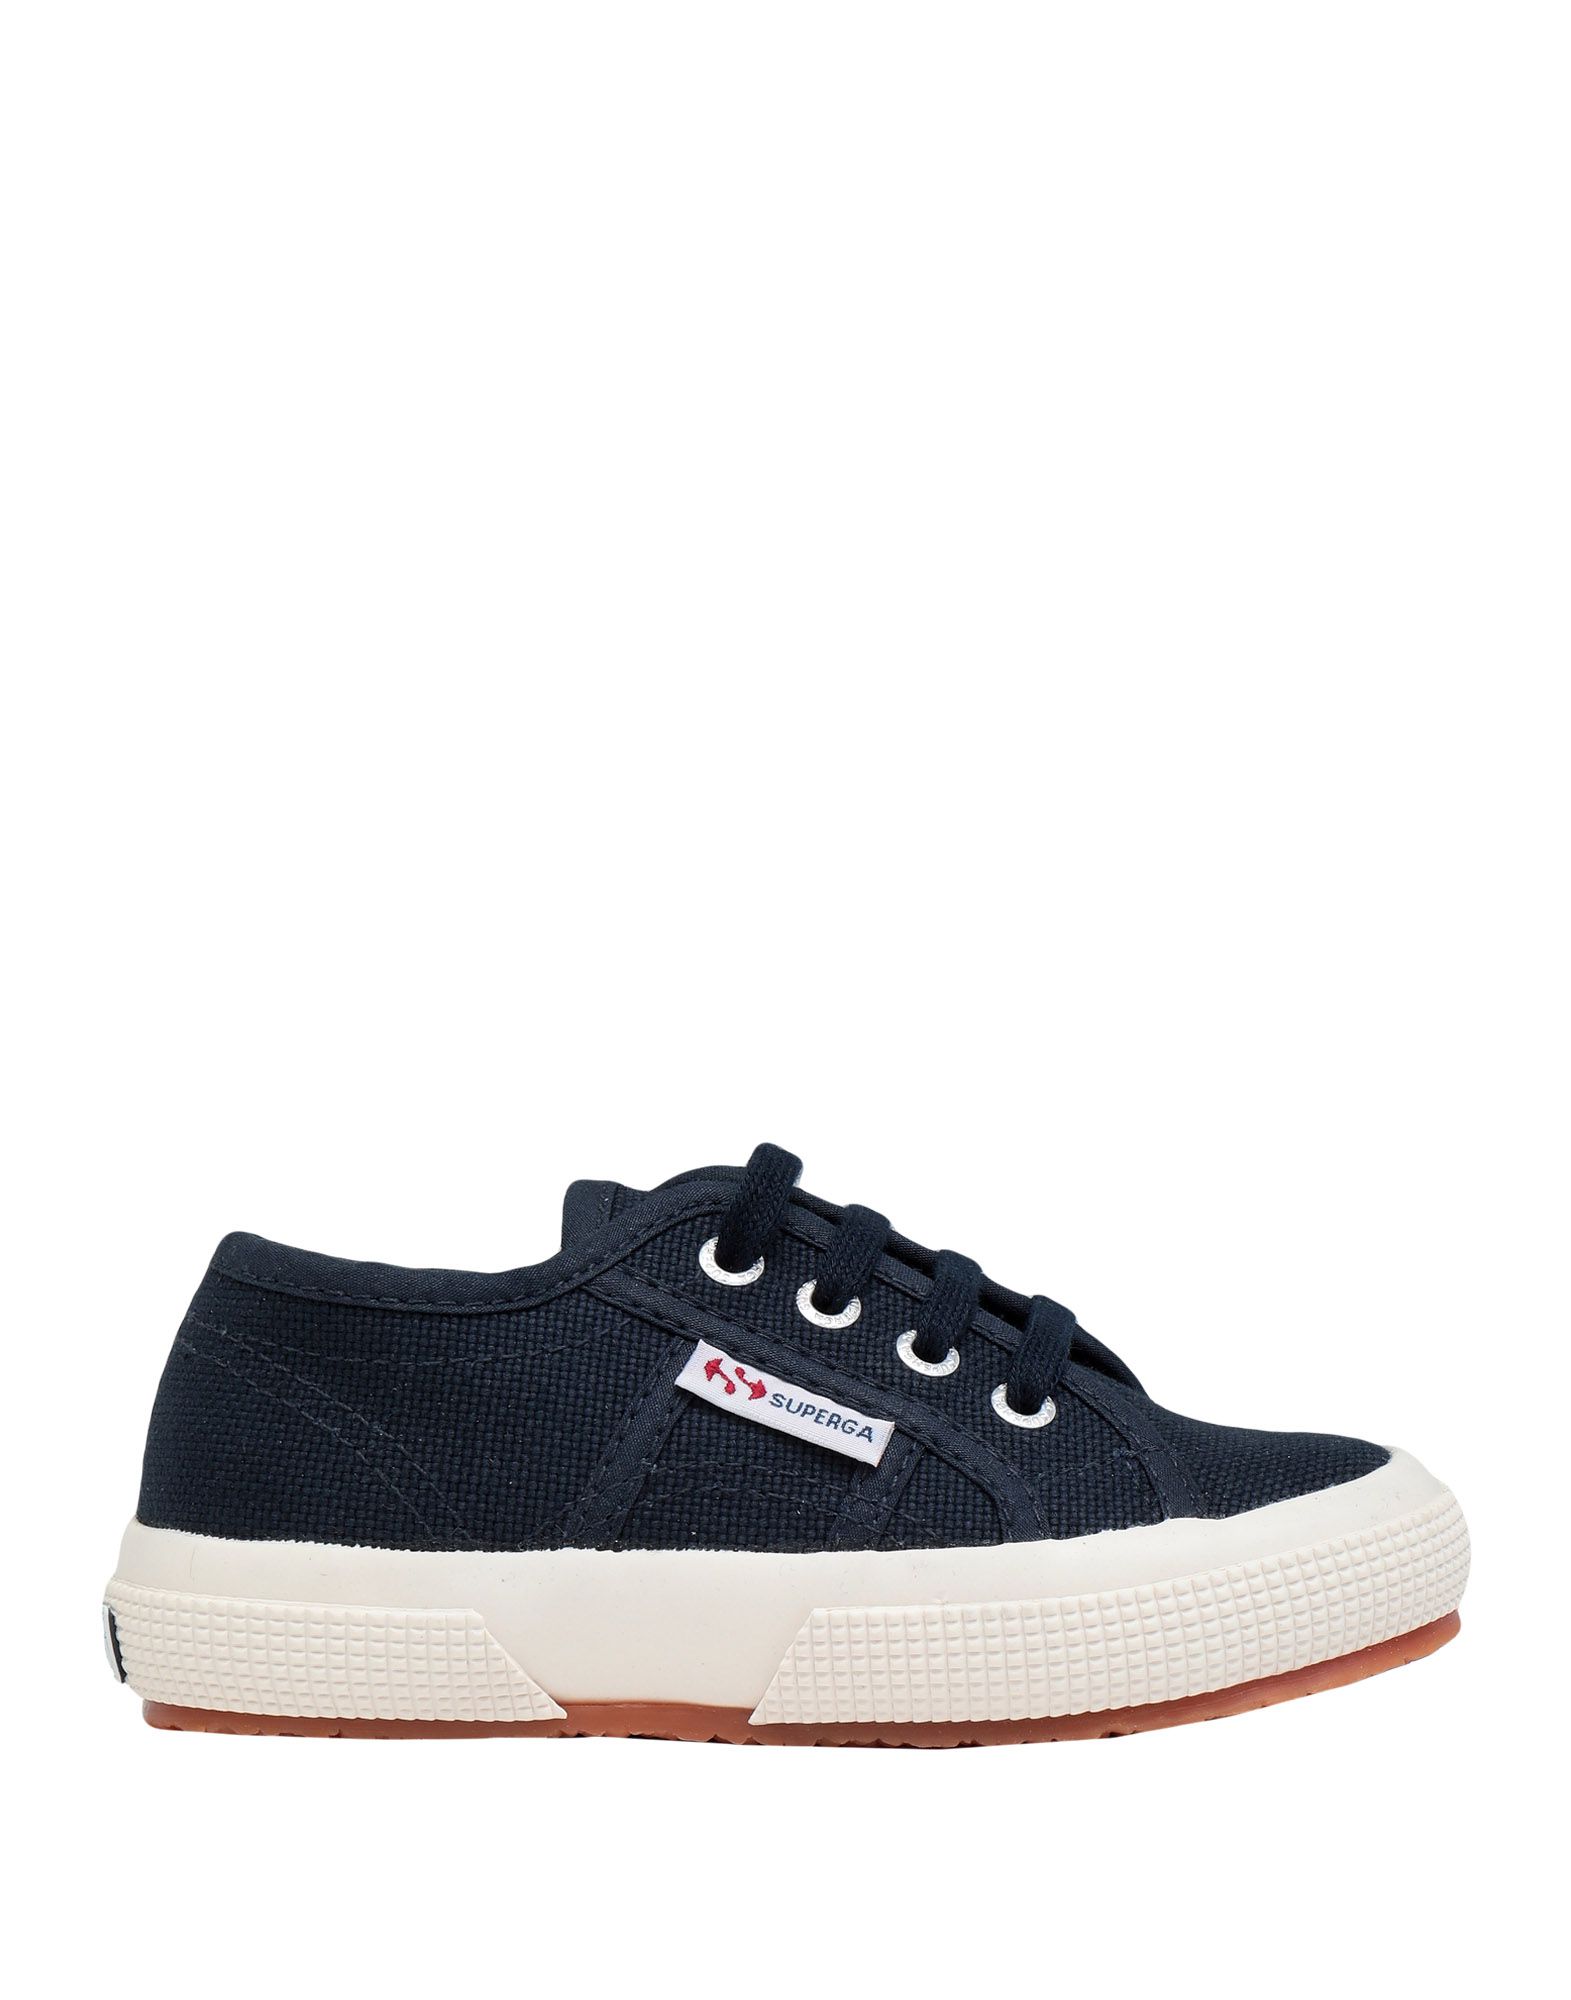 Shop Superga 2750-jcot Classic Toddler Sneakers Blue Size 9.5c Cotton